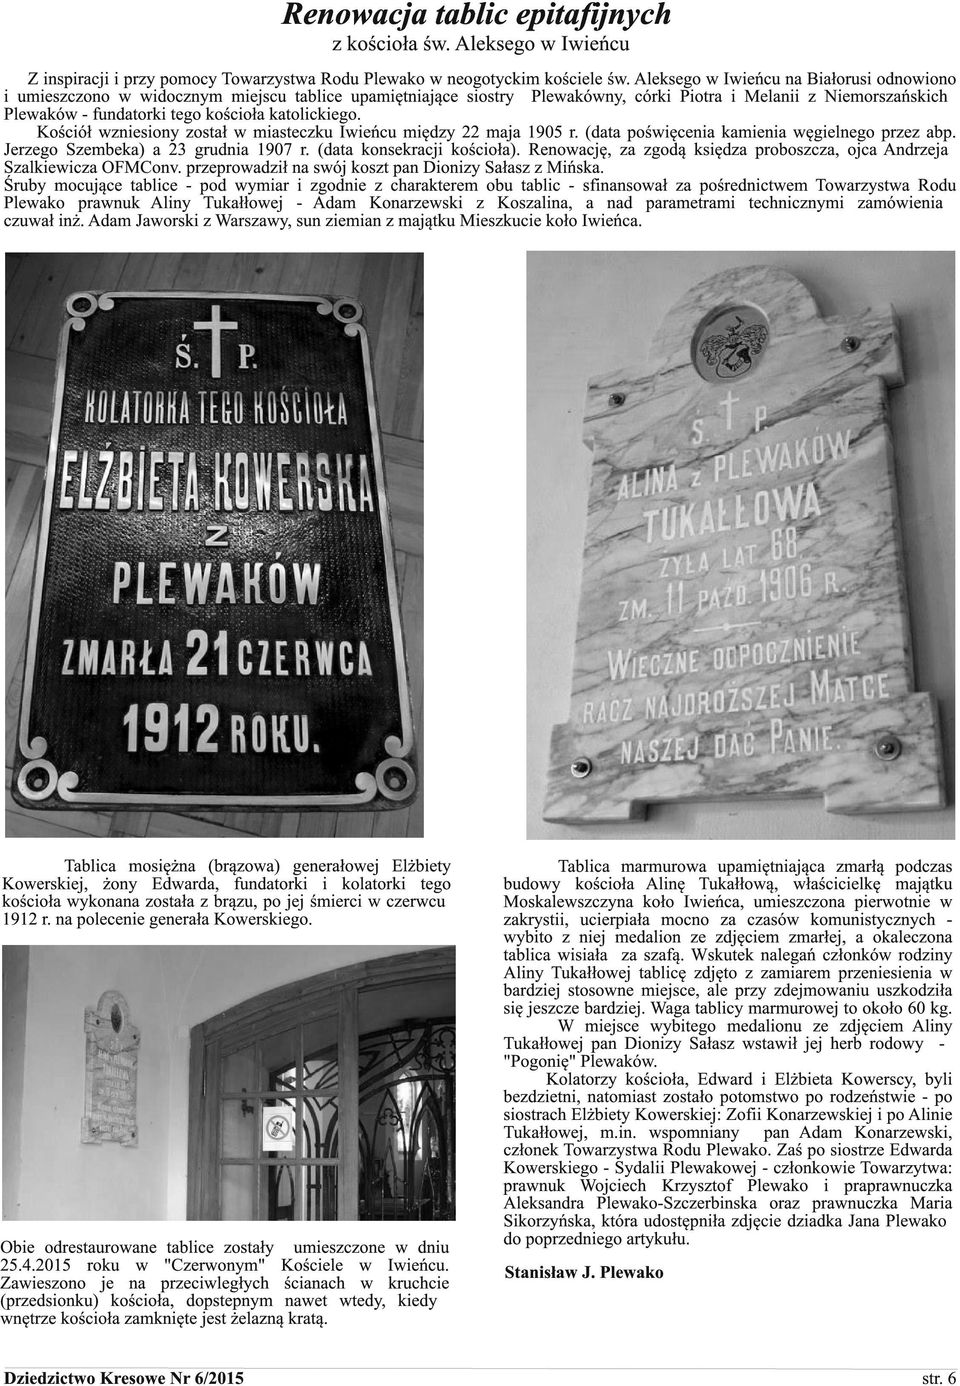 katolickiego. Kościół wzniesiony został w miasteczku Iwieńcu między 22 maja 1905 r. (data poświęcenia kamienia węgielnego przez abp. Jerzego Szembeka) a 23 grudnia 1907 r. (data konsekracji kościoła).